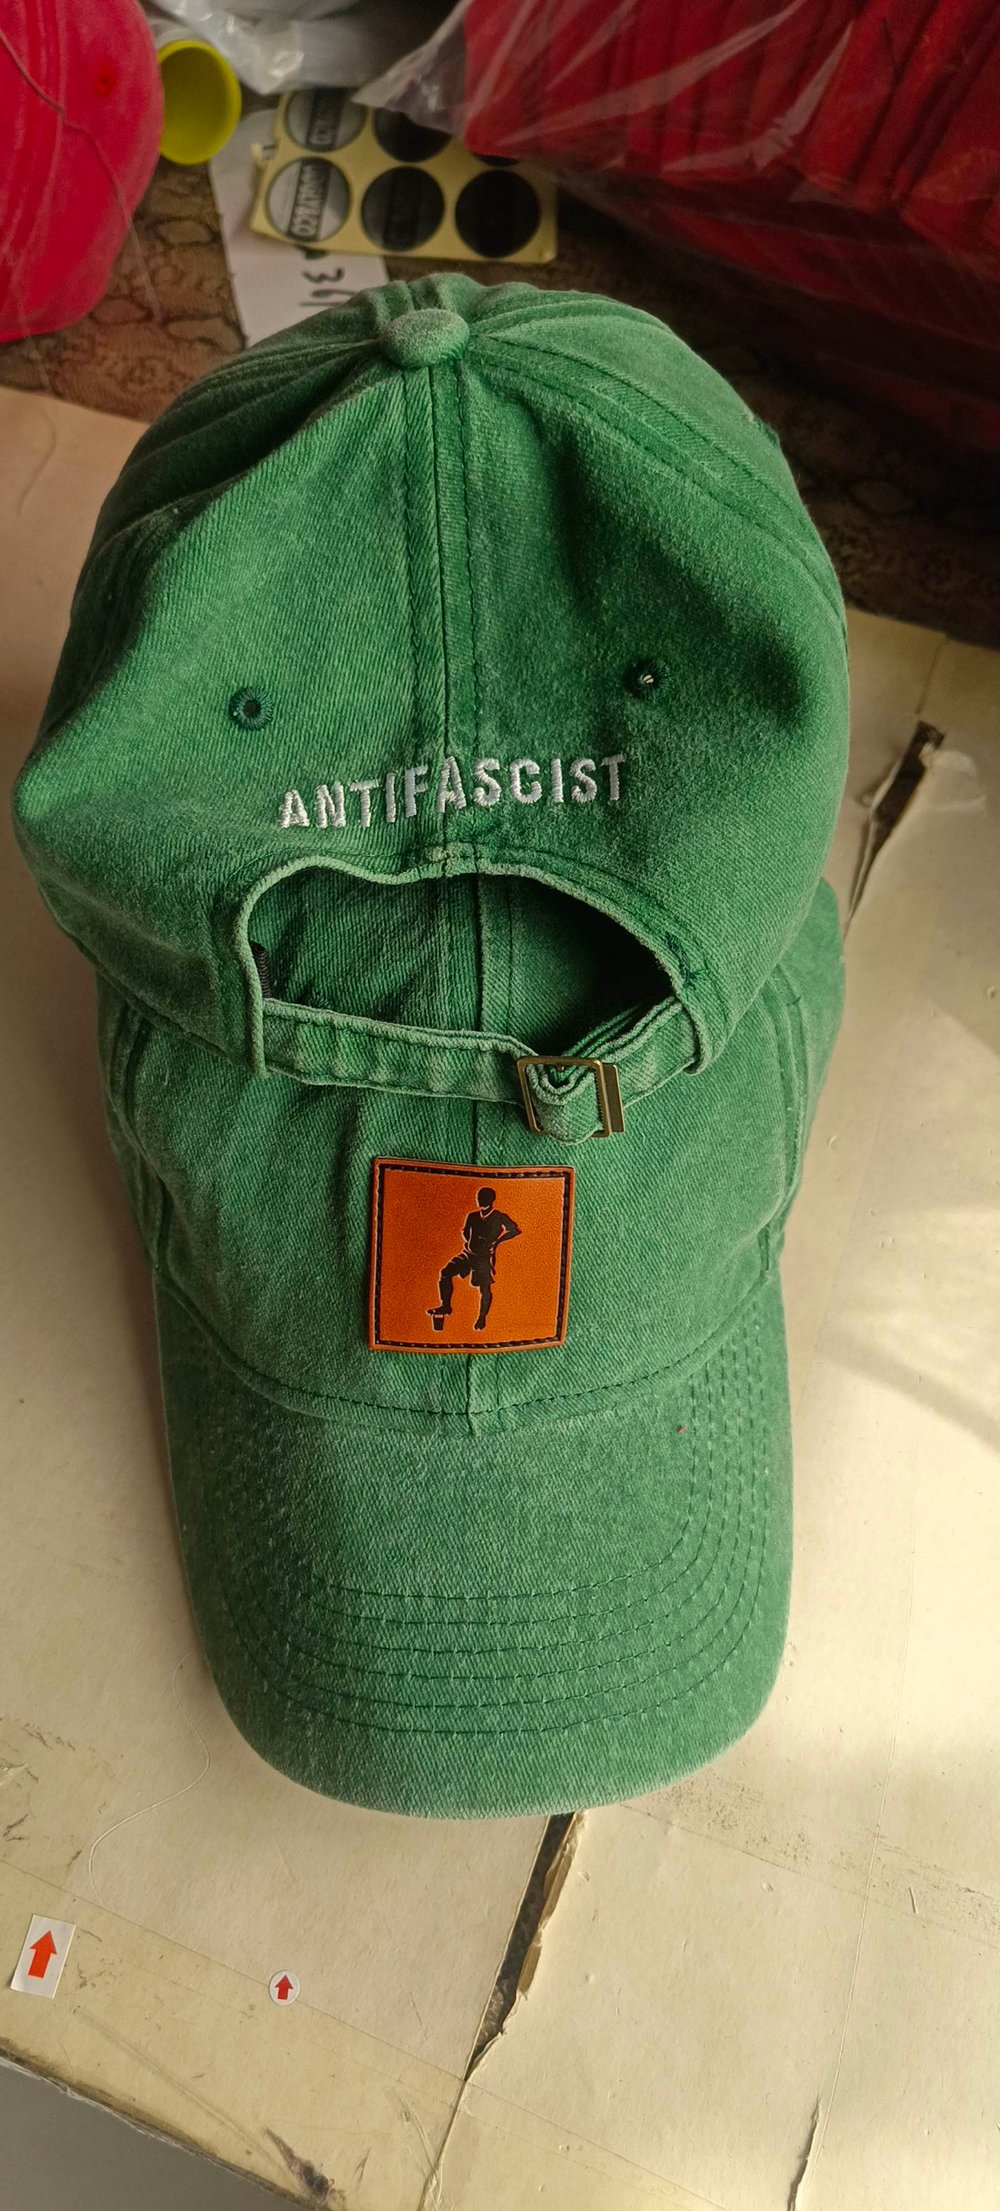 Carfast Soft Antifascist Cap